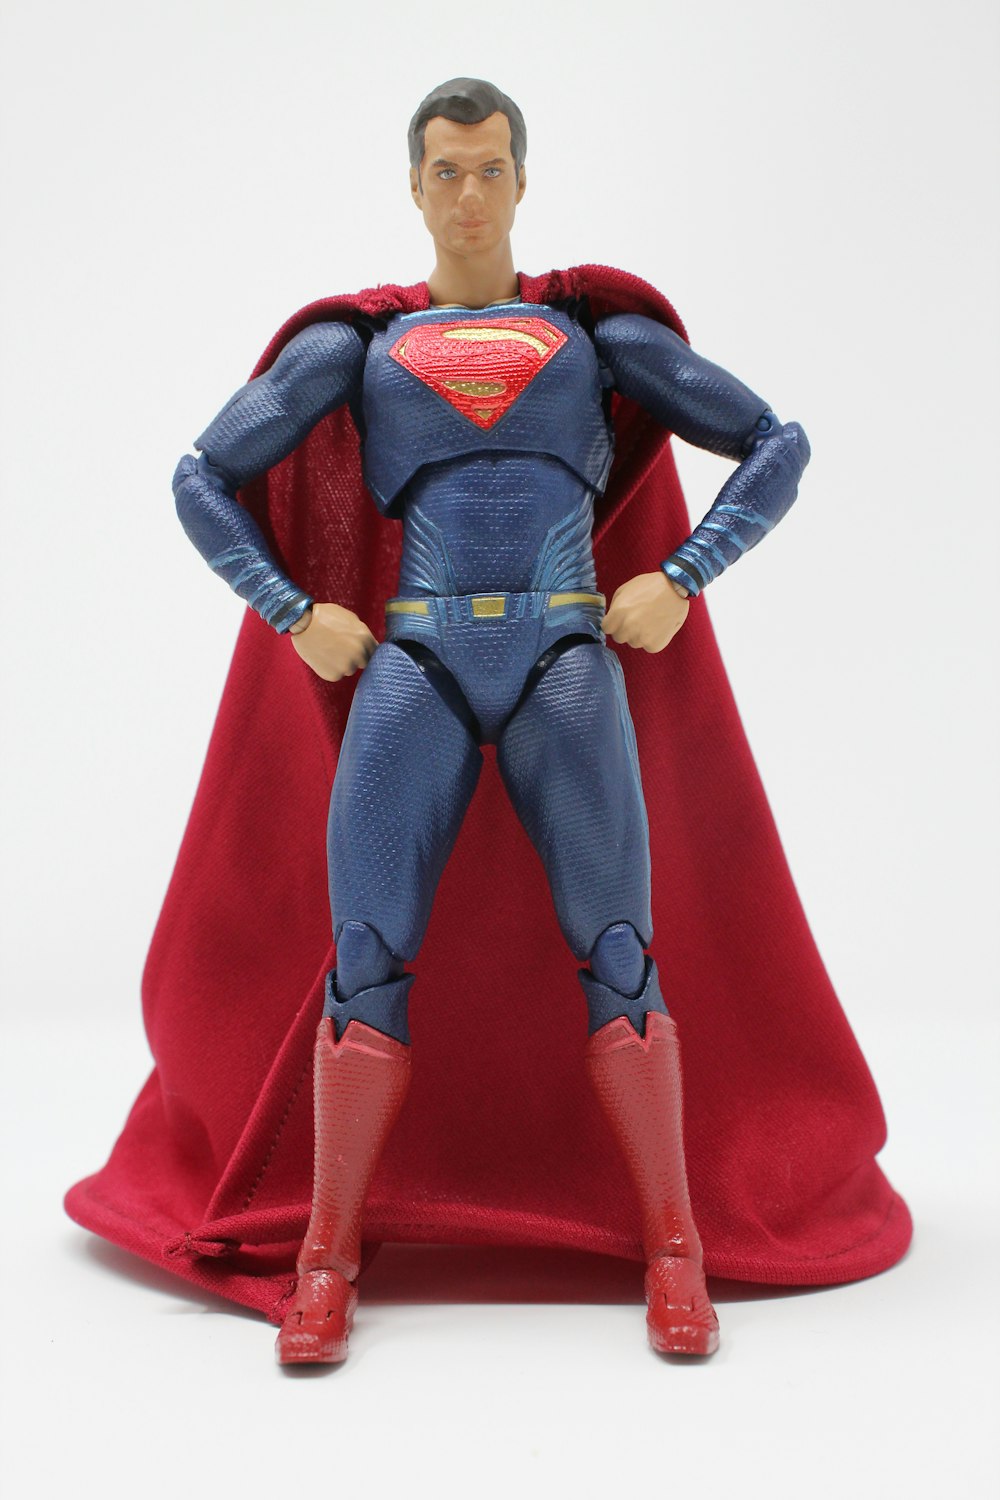 Figurine articulée de Superman